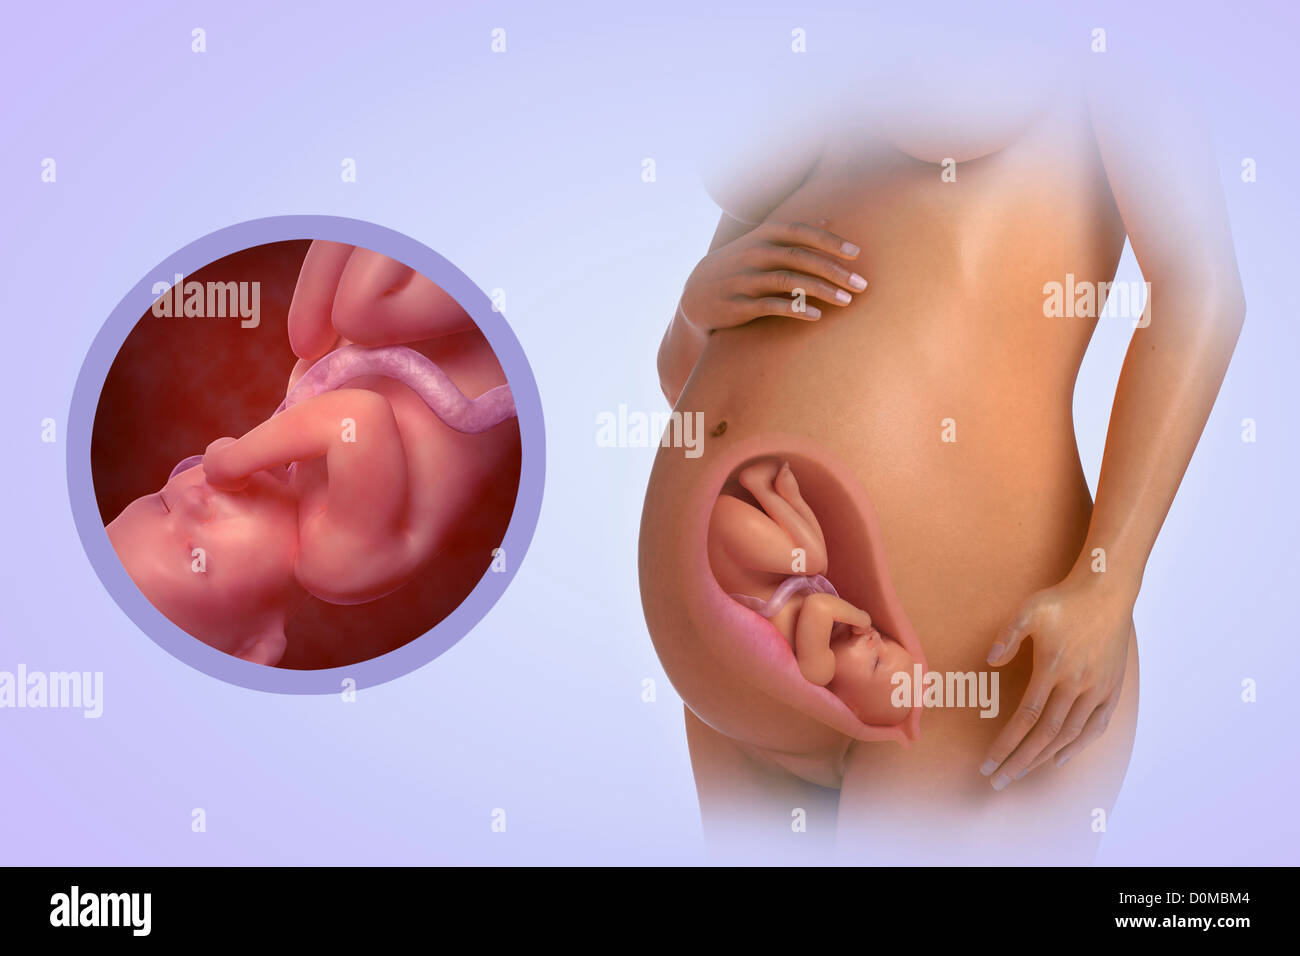 Ein menschliches Modell zeigt Schwangerschaft am 34. Schwangerschaftswoche. Stockfoto